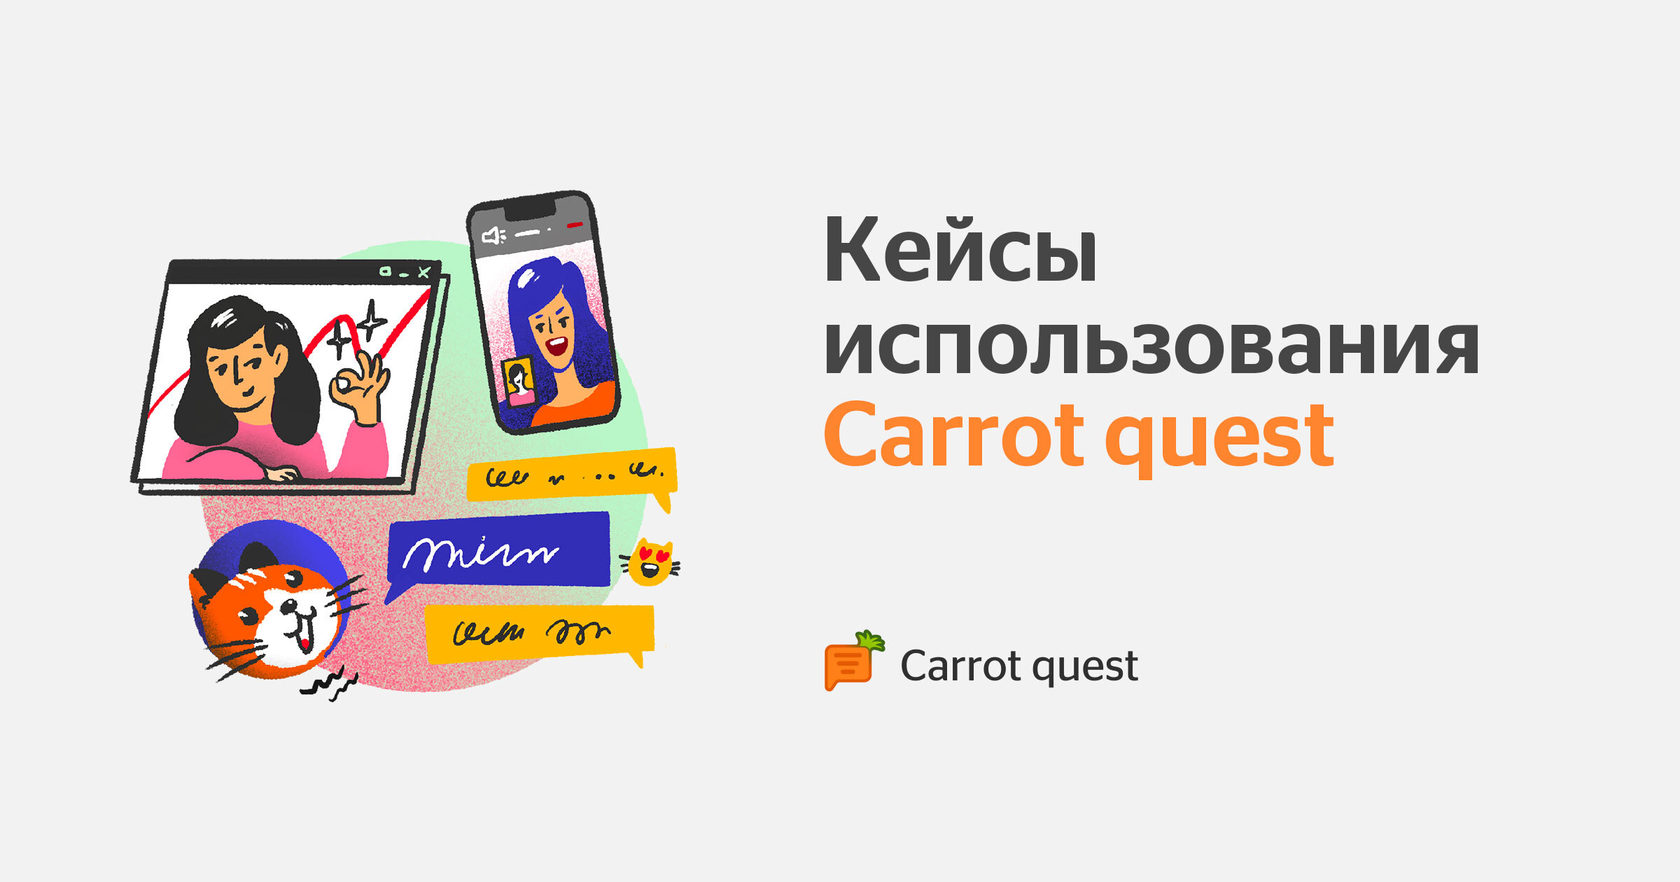 Кейсы применения Carrot quest в маркетинге компаний и продуктов